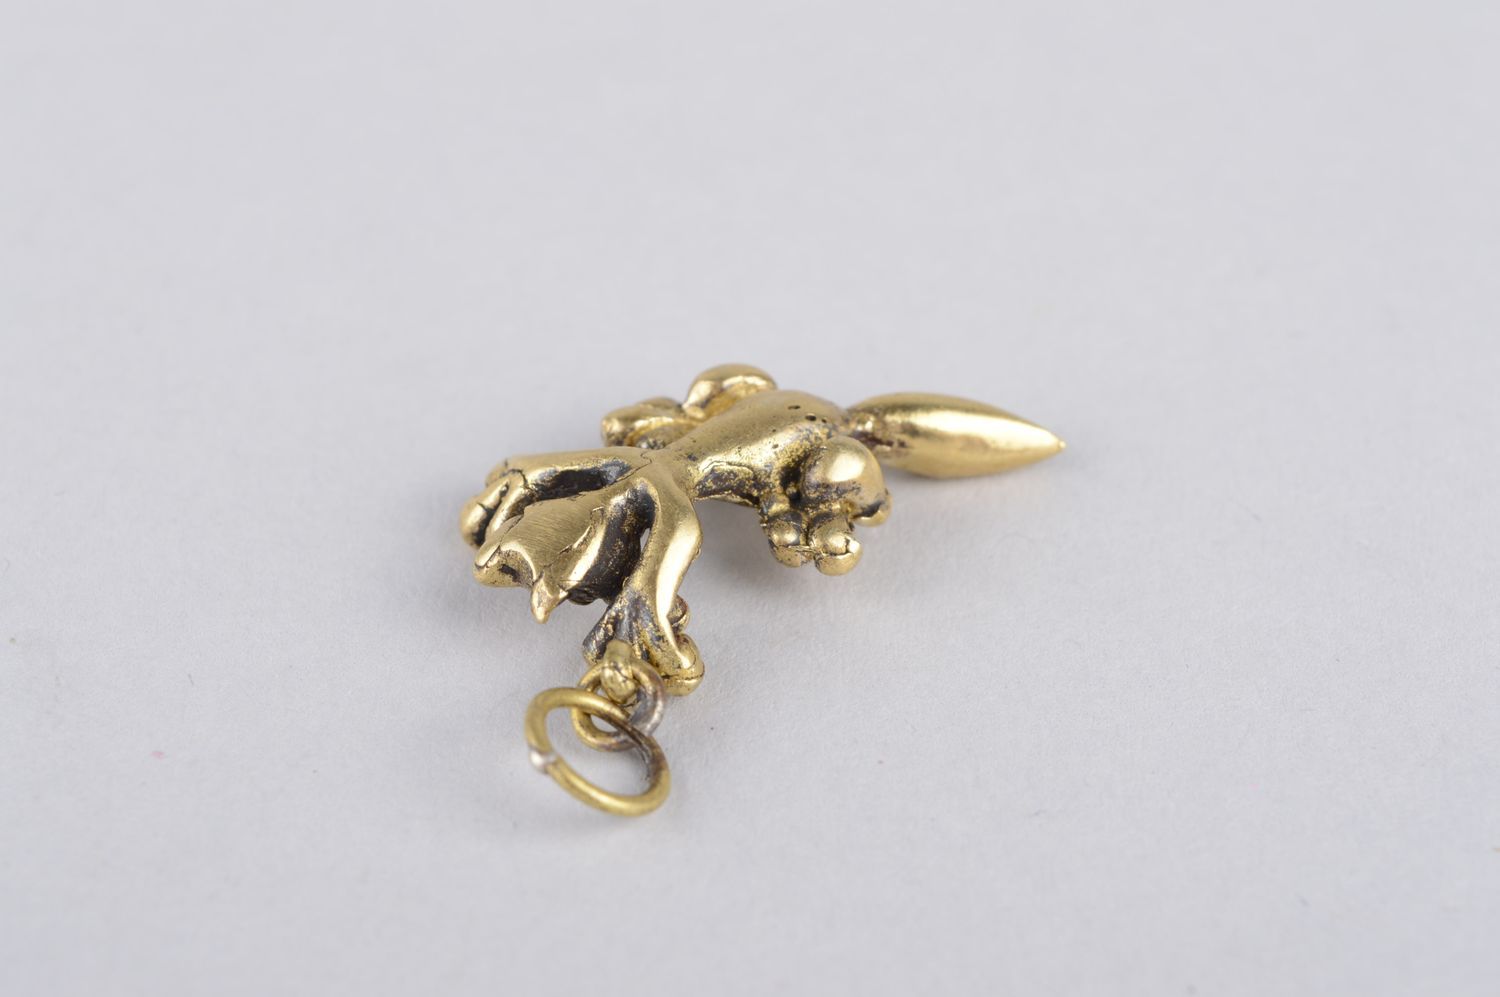 Handmade unusual bronze pendant cute designer accessory elegant pendant photo 4